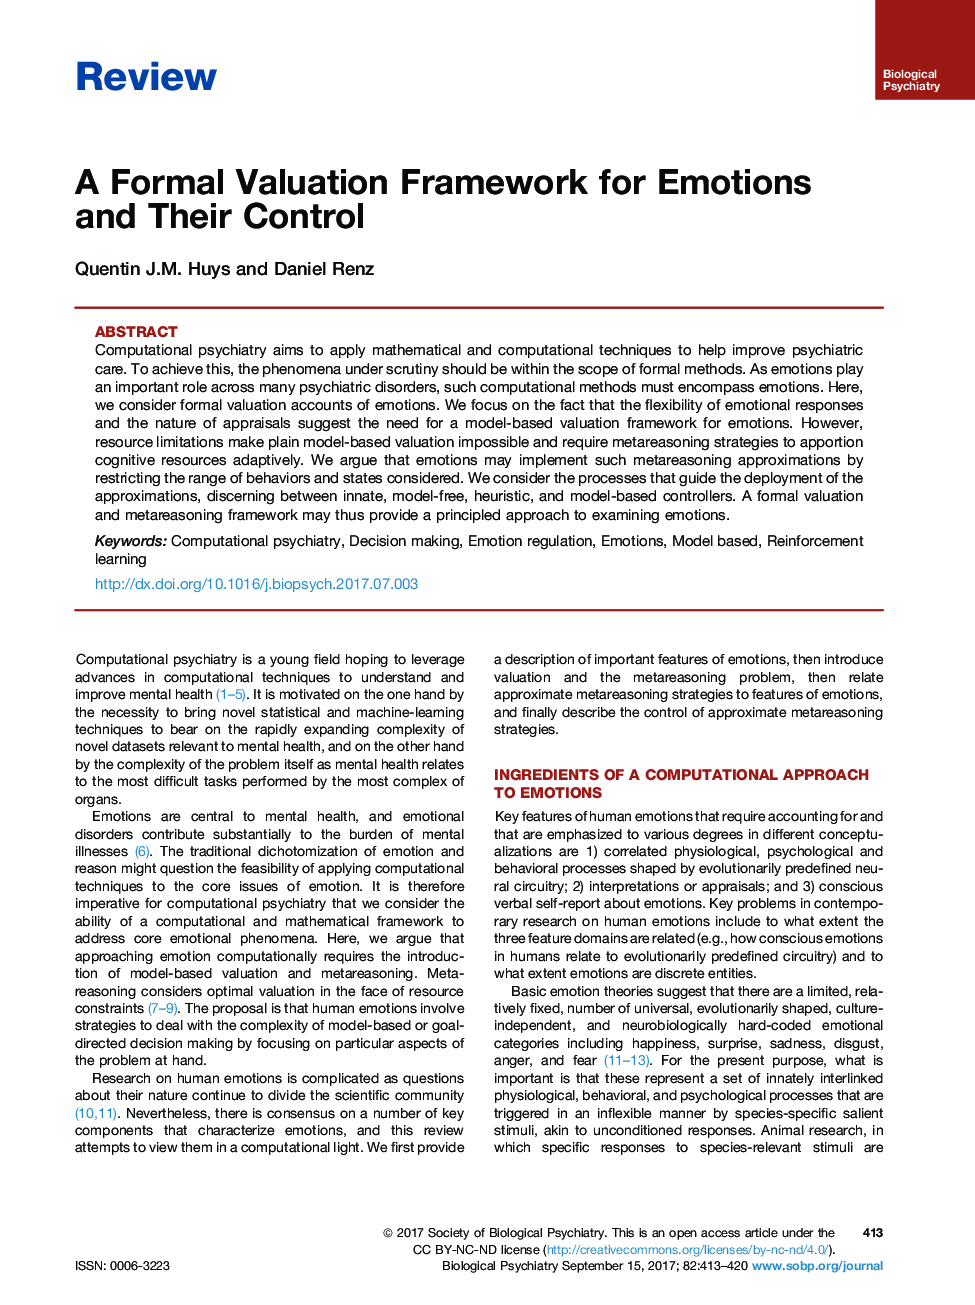 بررسی چارچوب ارزیابی رسمی برای احساسات و کنترل آنها 